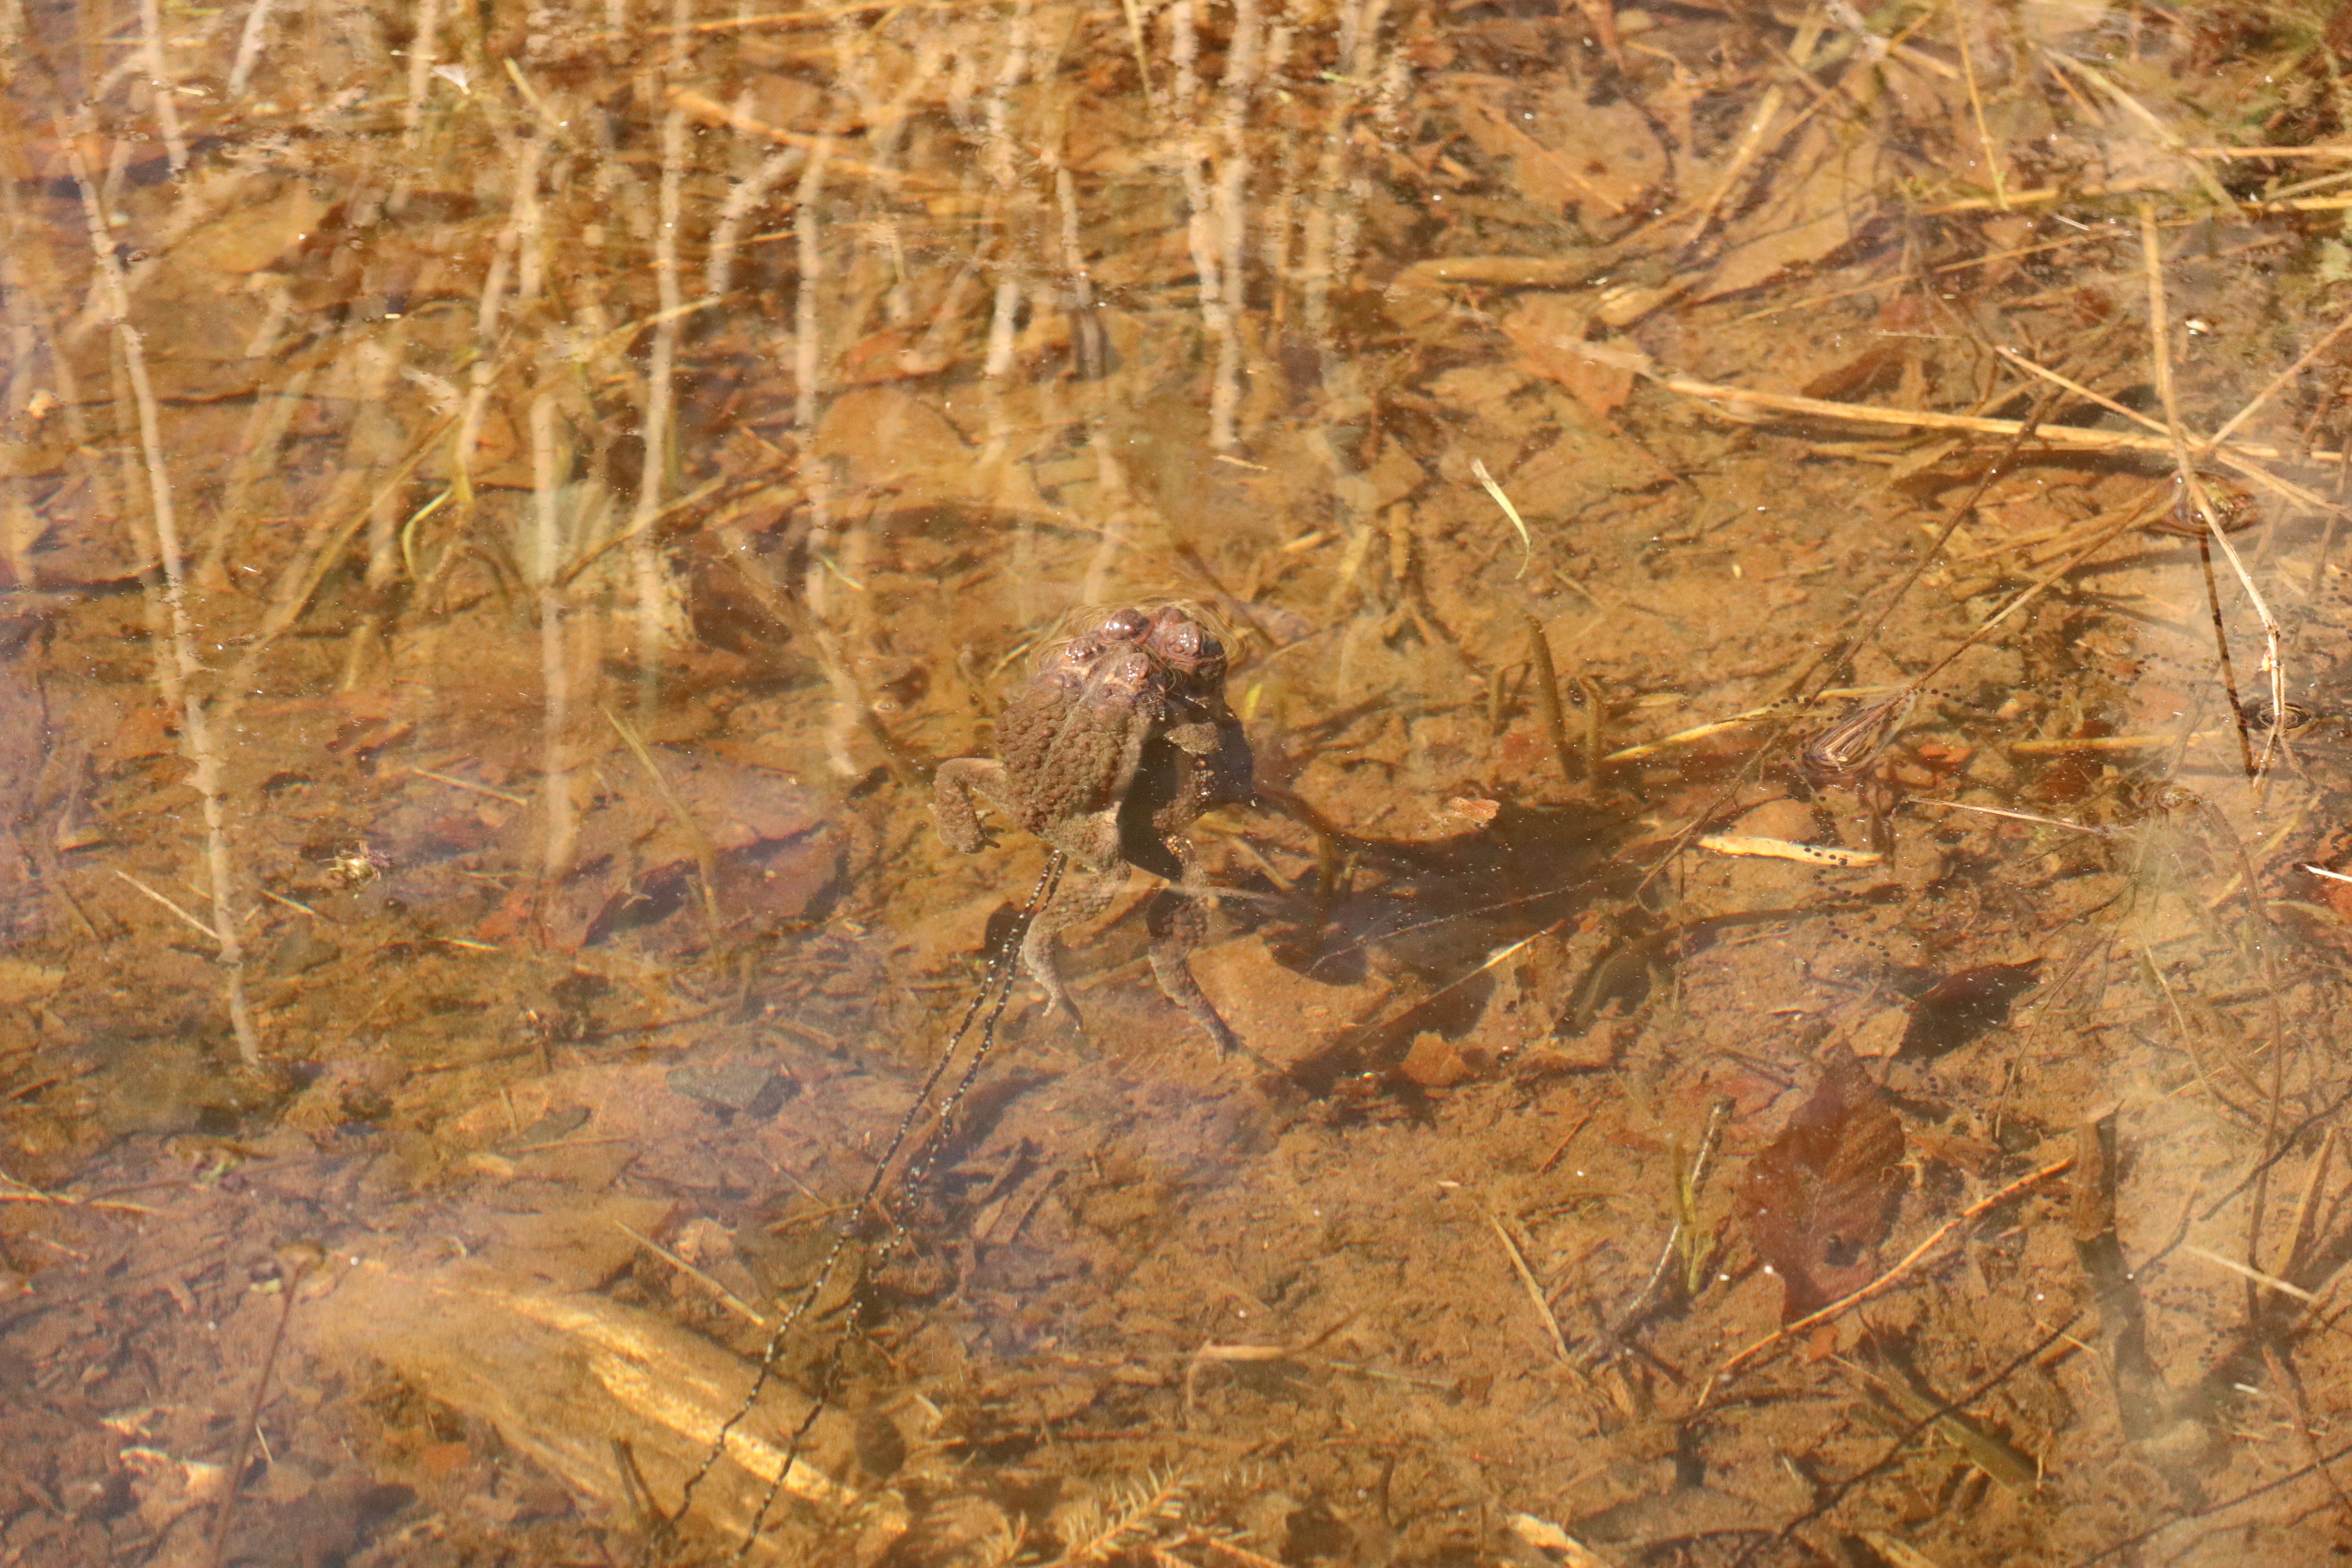 Mating season in the creek